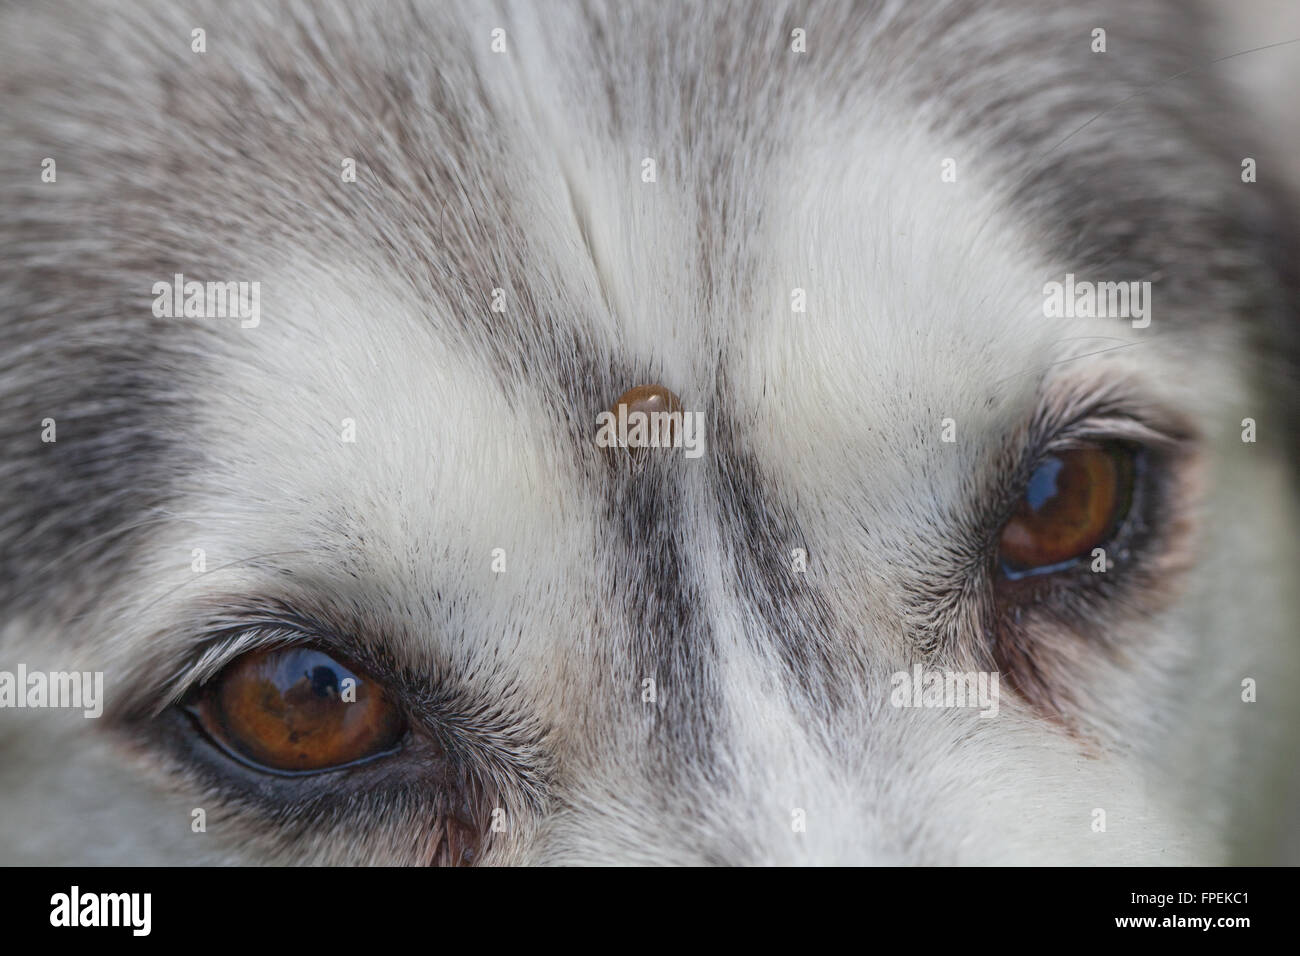 Husky de Sibérie. Chien. Canis lupus familiaris. Front. Remarque, Ixodes ricinus, embarquée sur le front au-dessus entre les yeux. Banque D'Images